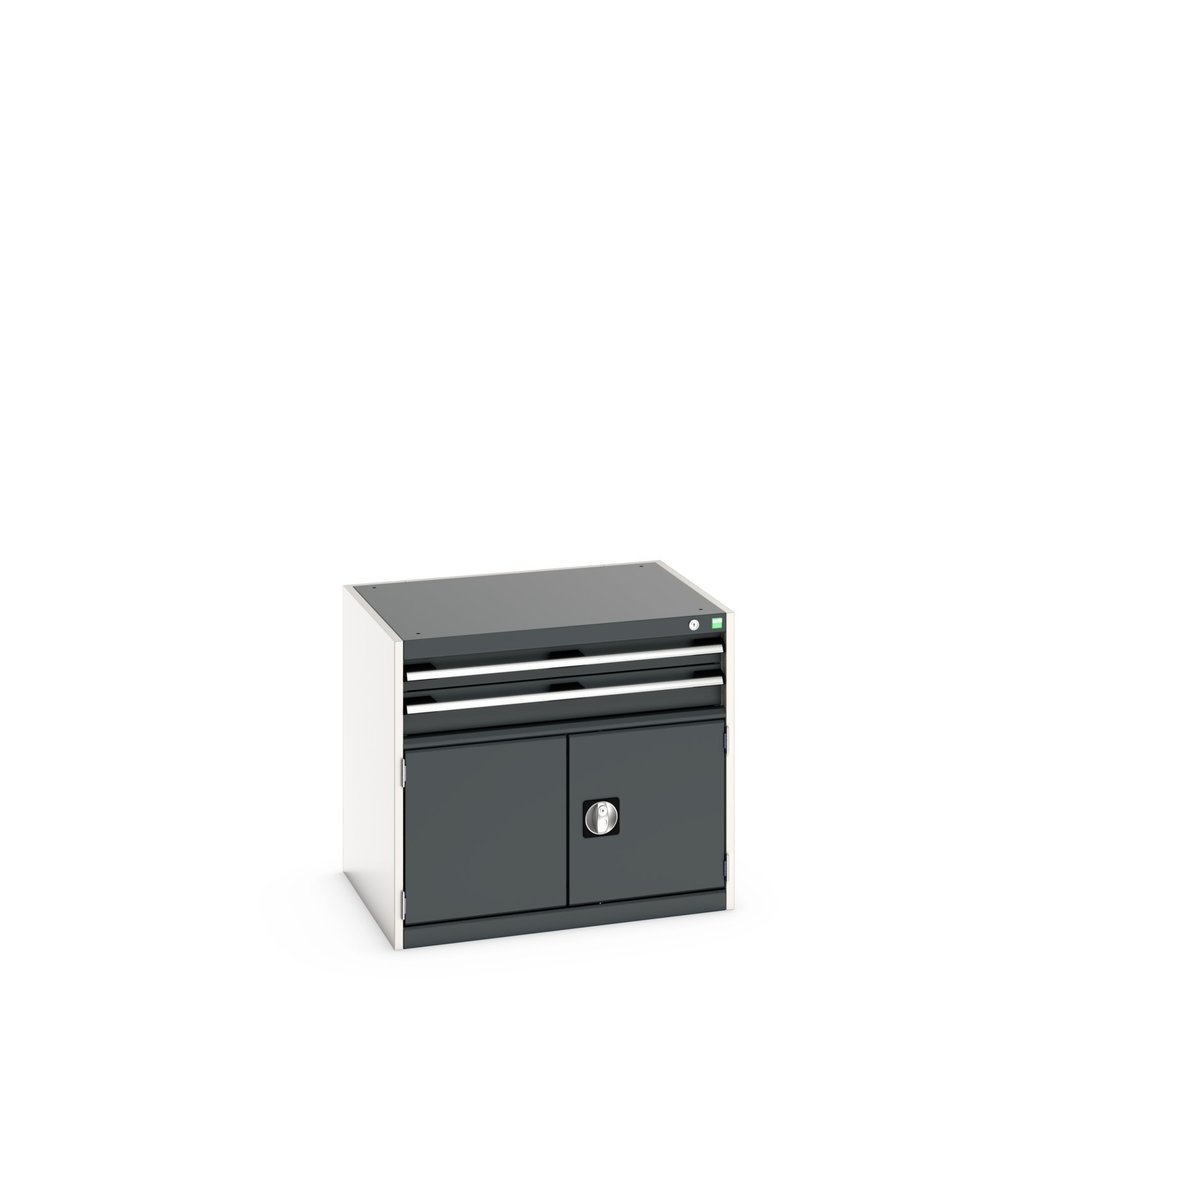 40020011. - cubio drawer-door cabinet